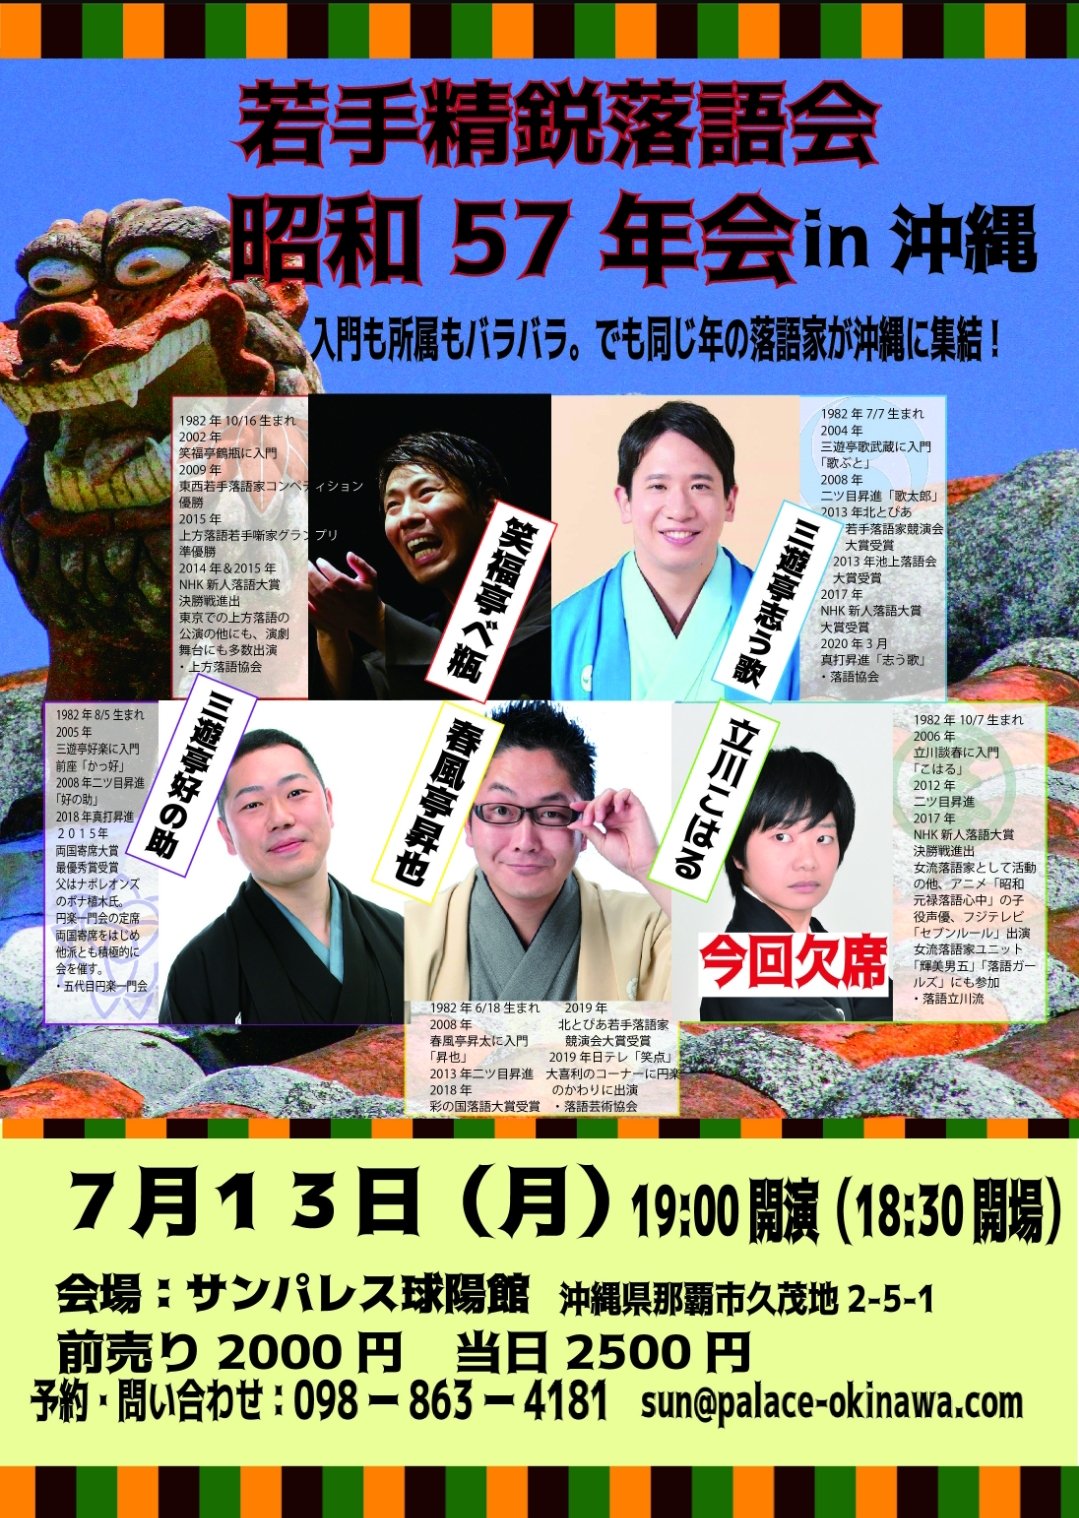 若手精鋭落語会「昭和57年会 in 沖縄」が7月3日（月）開催されます。ホテルサンパレス球陽館